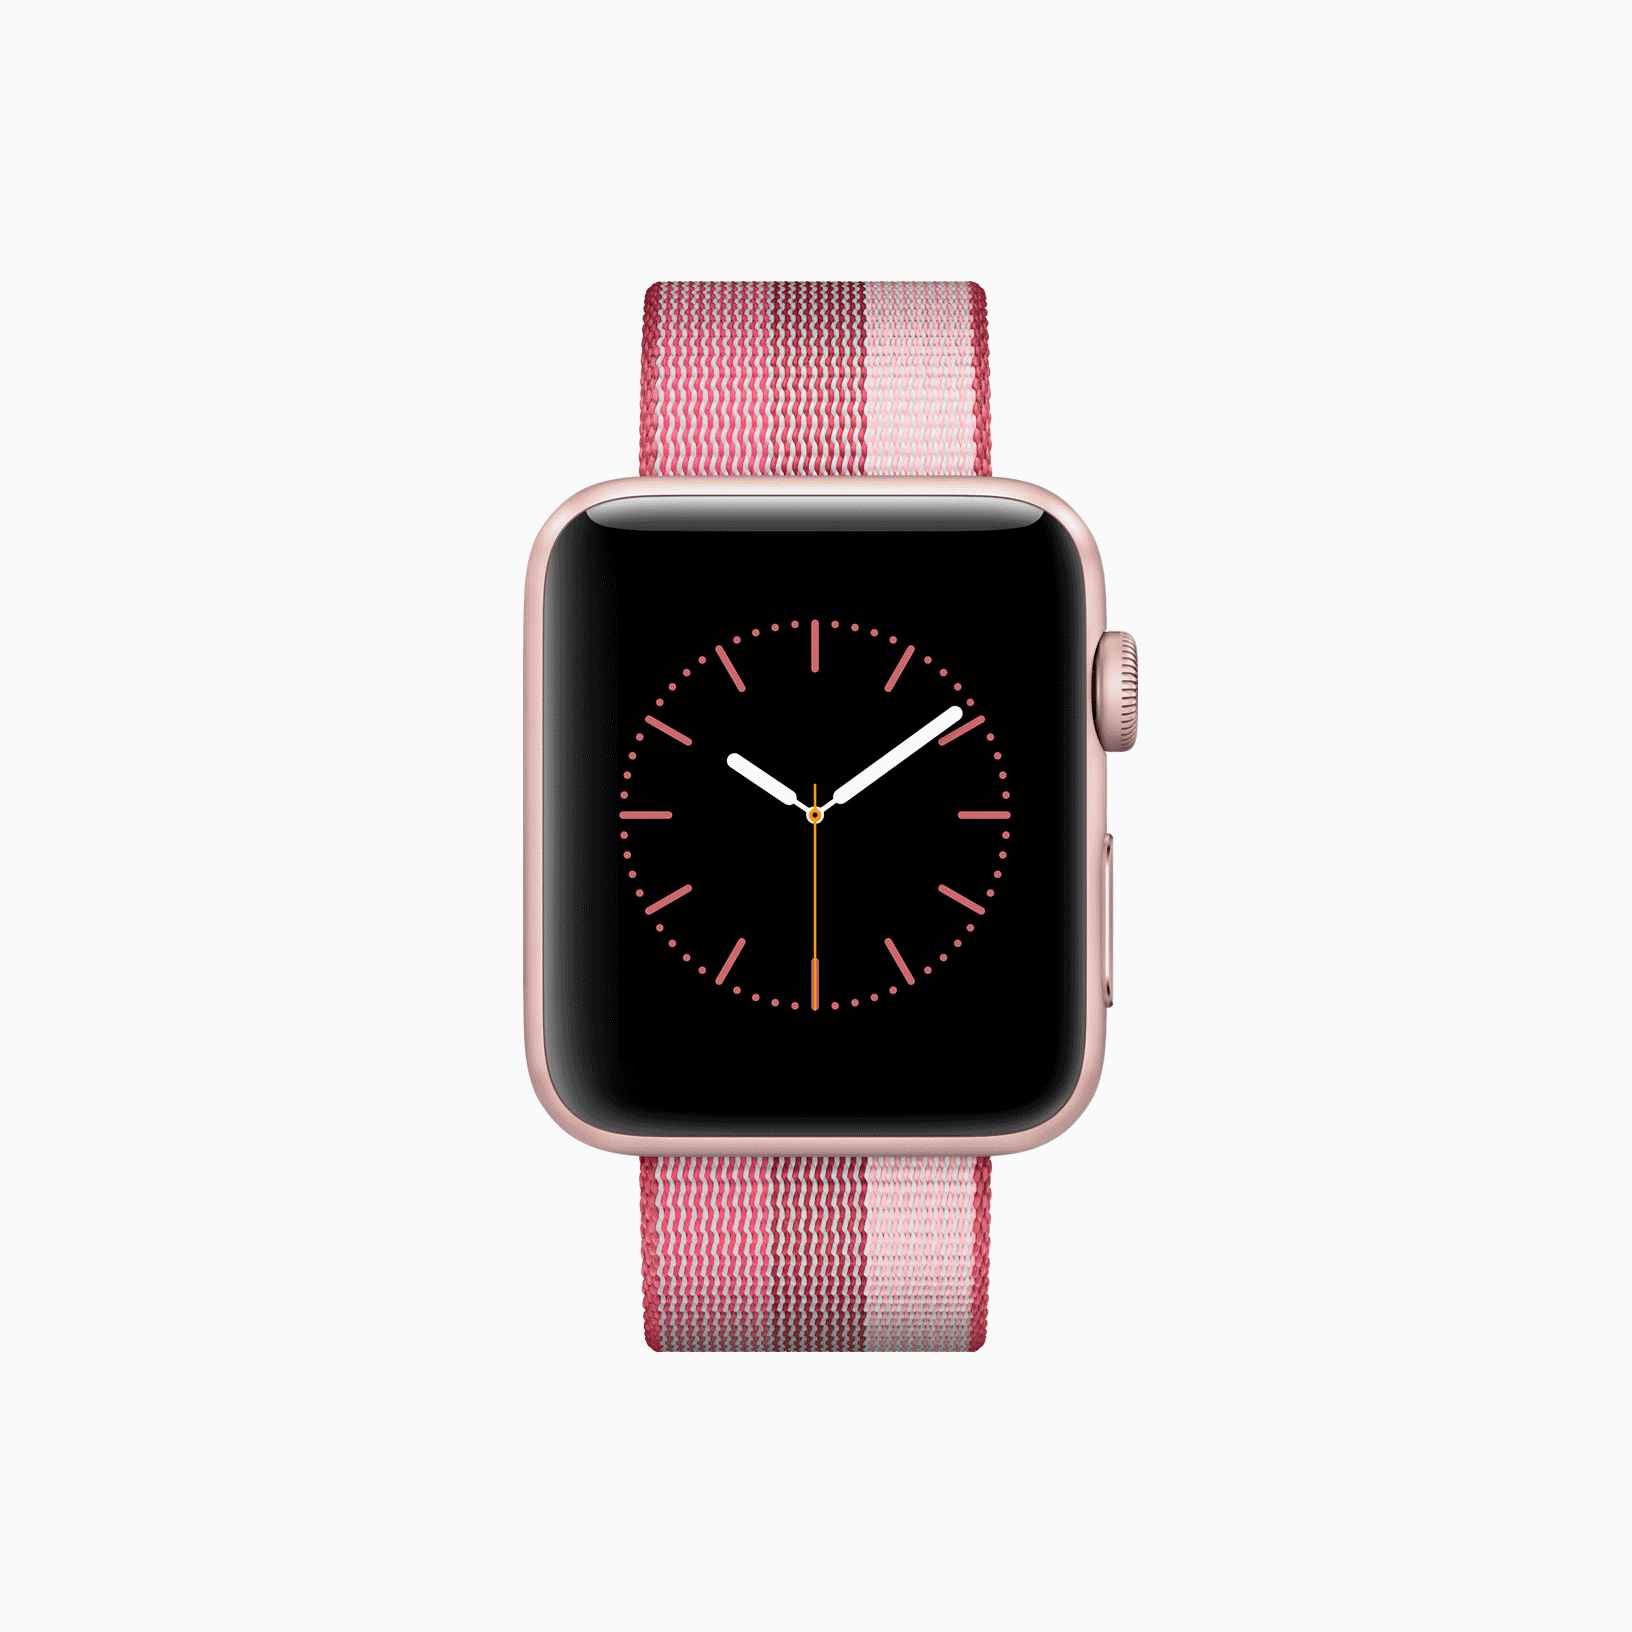 Apple rilis generasi penerus iPad Air serta beragam pilihan baru tali Apple Watch